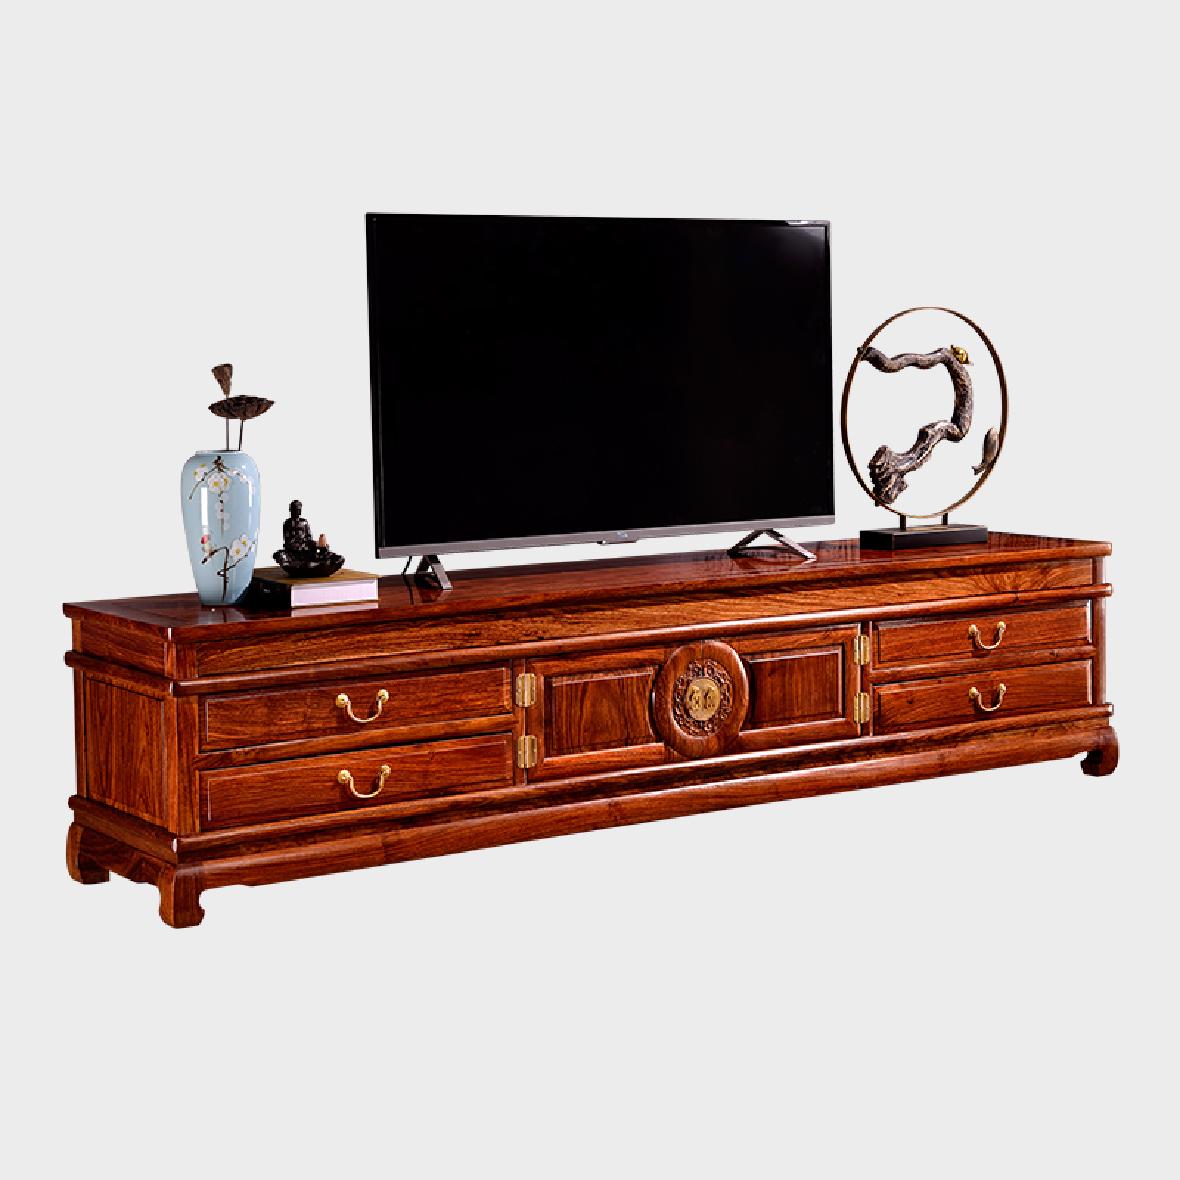 刺猬紫檀实木团圆电视柜质量可靠红木家具